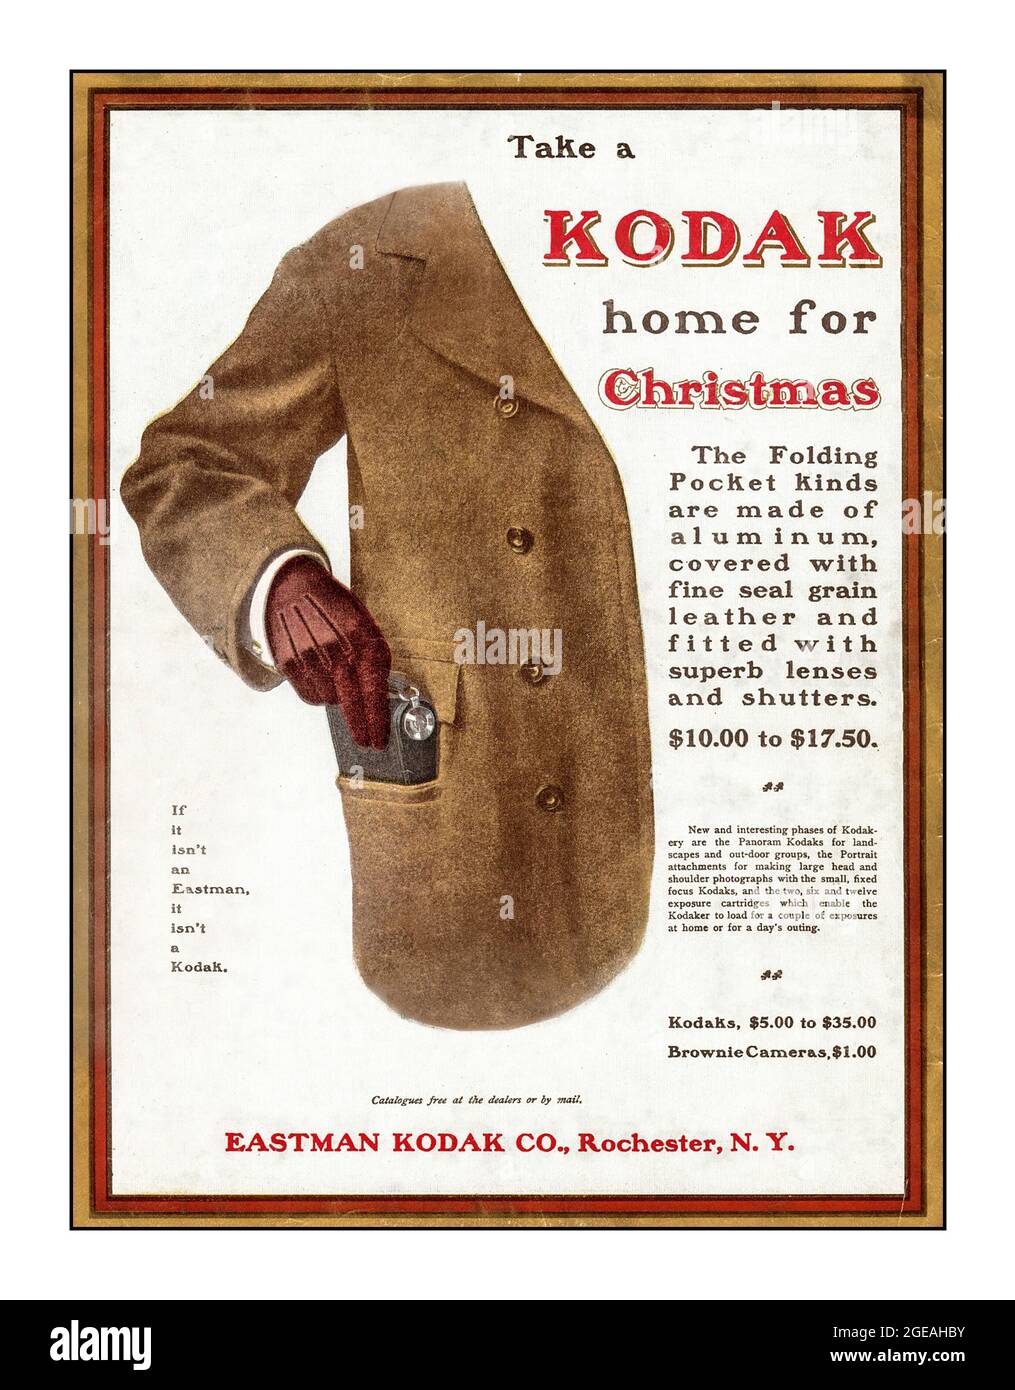 Die Kodak Press-Werbung im Vintage-Stil des 20. Jahrhunderts für eine faltbare Taschenkamera „Take a Kodak Home for Christmas“ zeigt einen gut gekleideten Mann, der eine Kodak-Kamera in seine Hosentasche schlüpft Eastman Kodak Company Rochester New York USA Stockfoto